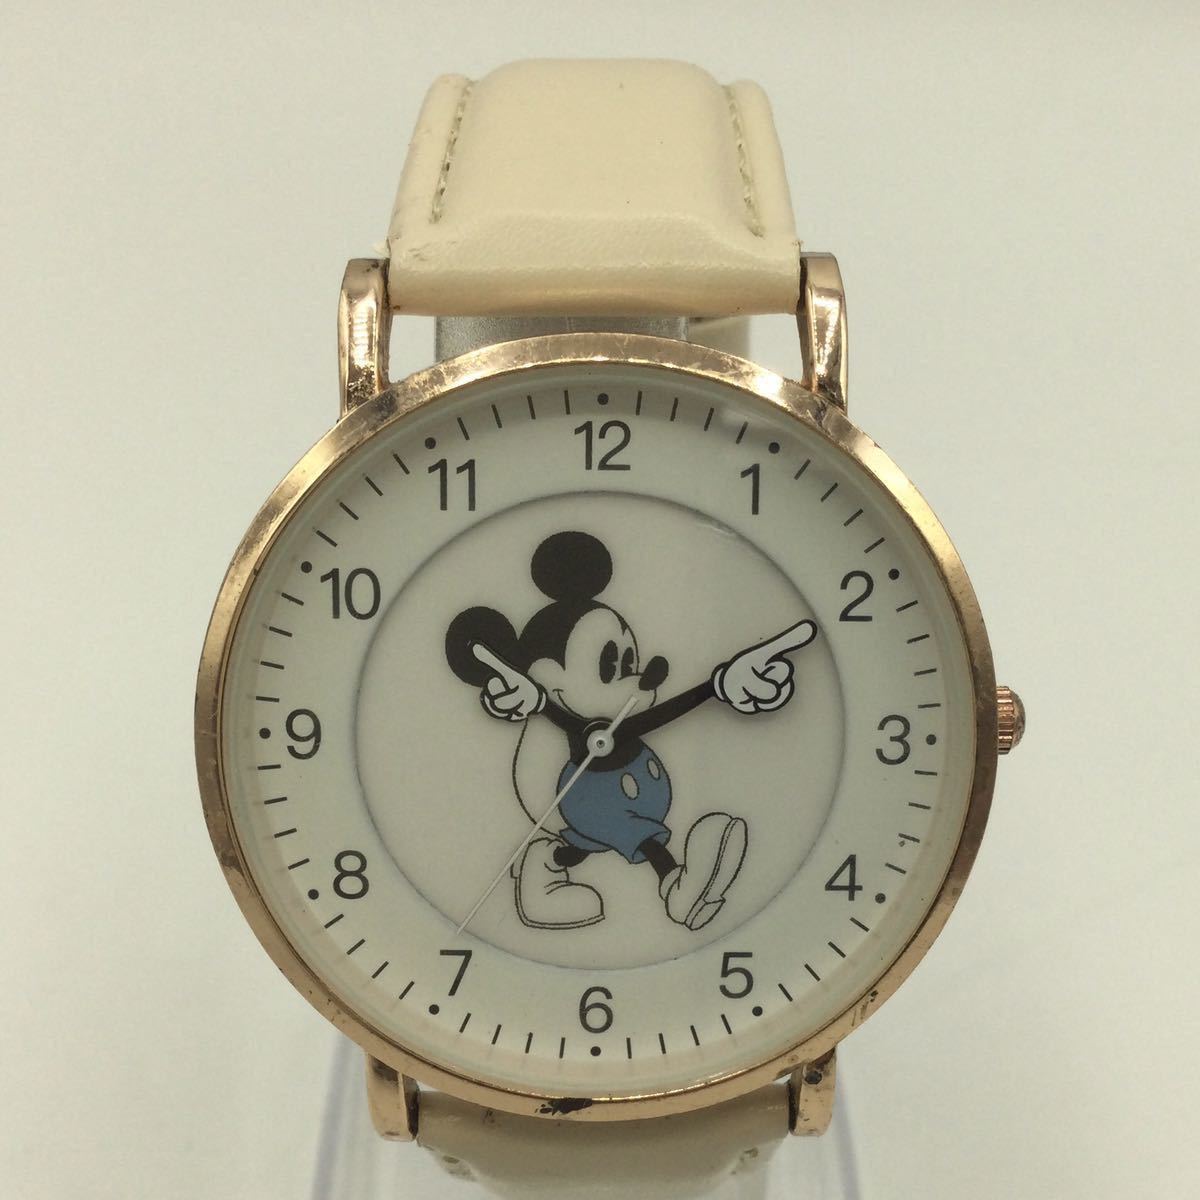 新品同様 生まれのブランドで Disney ディズニー ミッキーマウス 腕時計 時計 クオーツ クォーツ ステンレススチール アンティーク 革ベルト AN ielts-test-prep.com ielts-test-prep.com